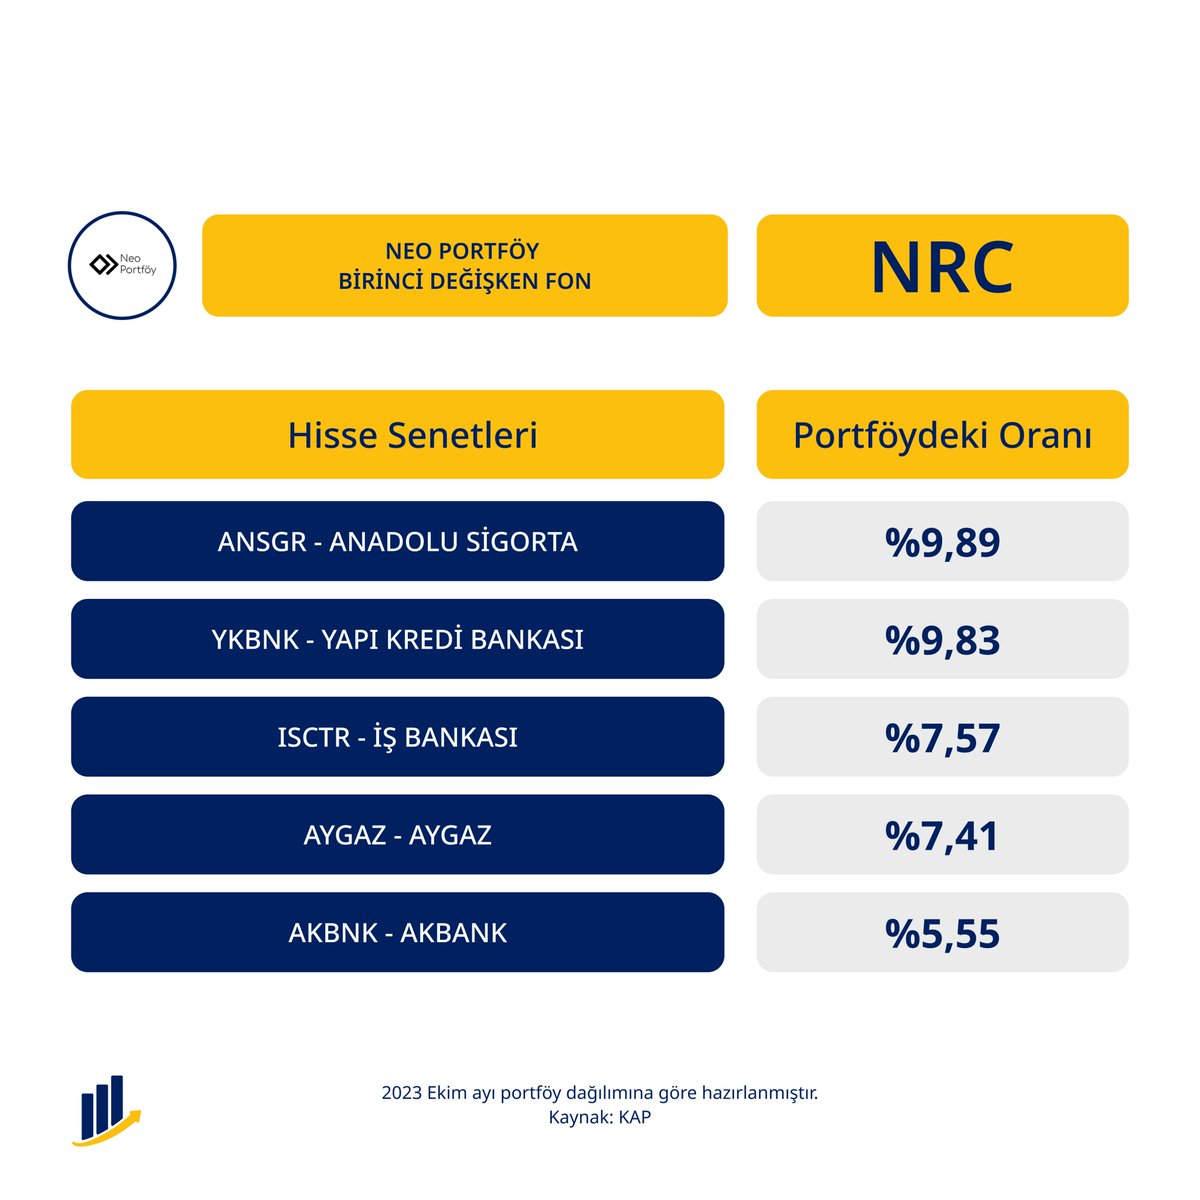 Geçtiğimiz hafta KAP'ta yayınlanan duyuru ile bundan sonra minimum %51 oranında hisse senedi taşıyacağı belirtilen #NeoPortföy Birinci Değişken Fon #NRC'nin varlık dağılımı yayımlandı. 

#NRC yatırımcıları en az 1 yıl süreyle fonu taşıdıkları zaman %0 stopaj avantajı elde ediyor.